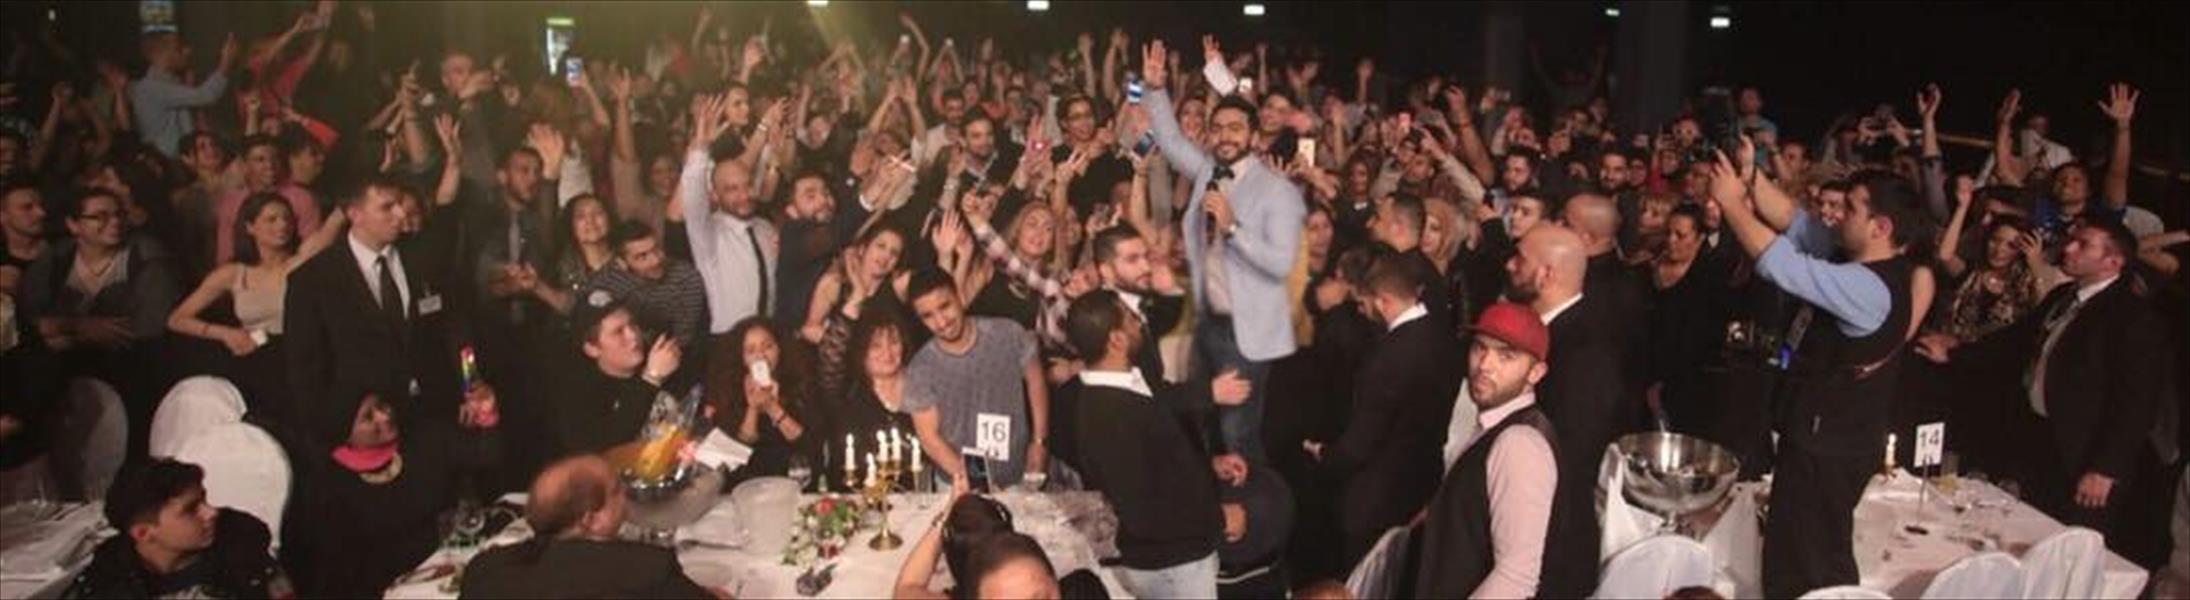 بالصور: 10 سفراء في حفل تامر حسني ببرلين